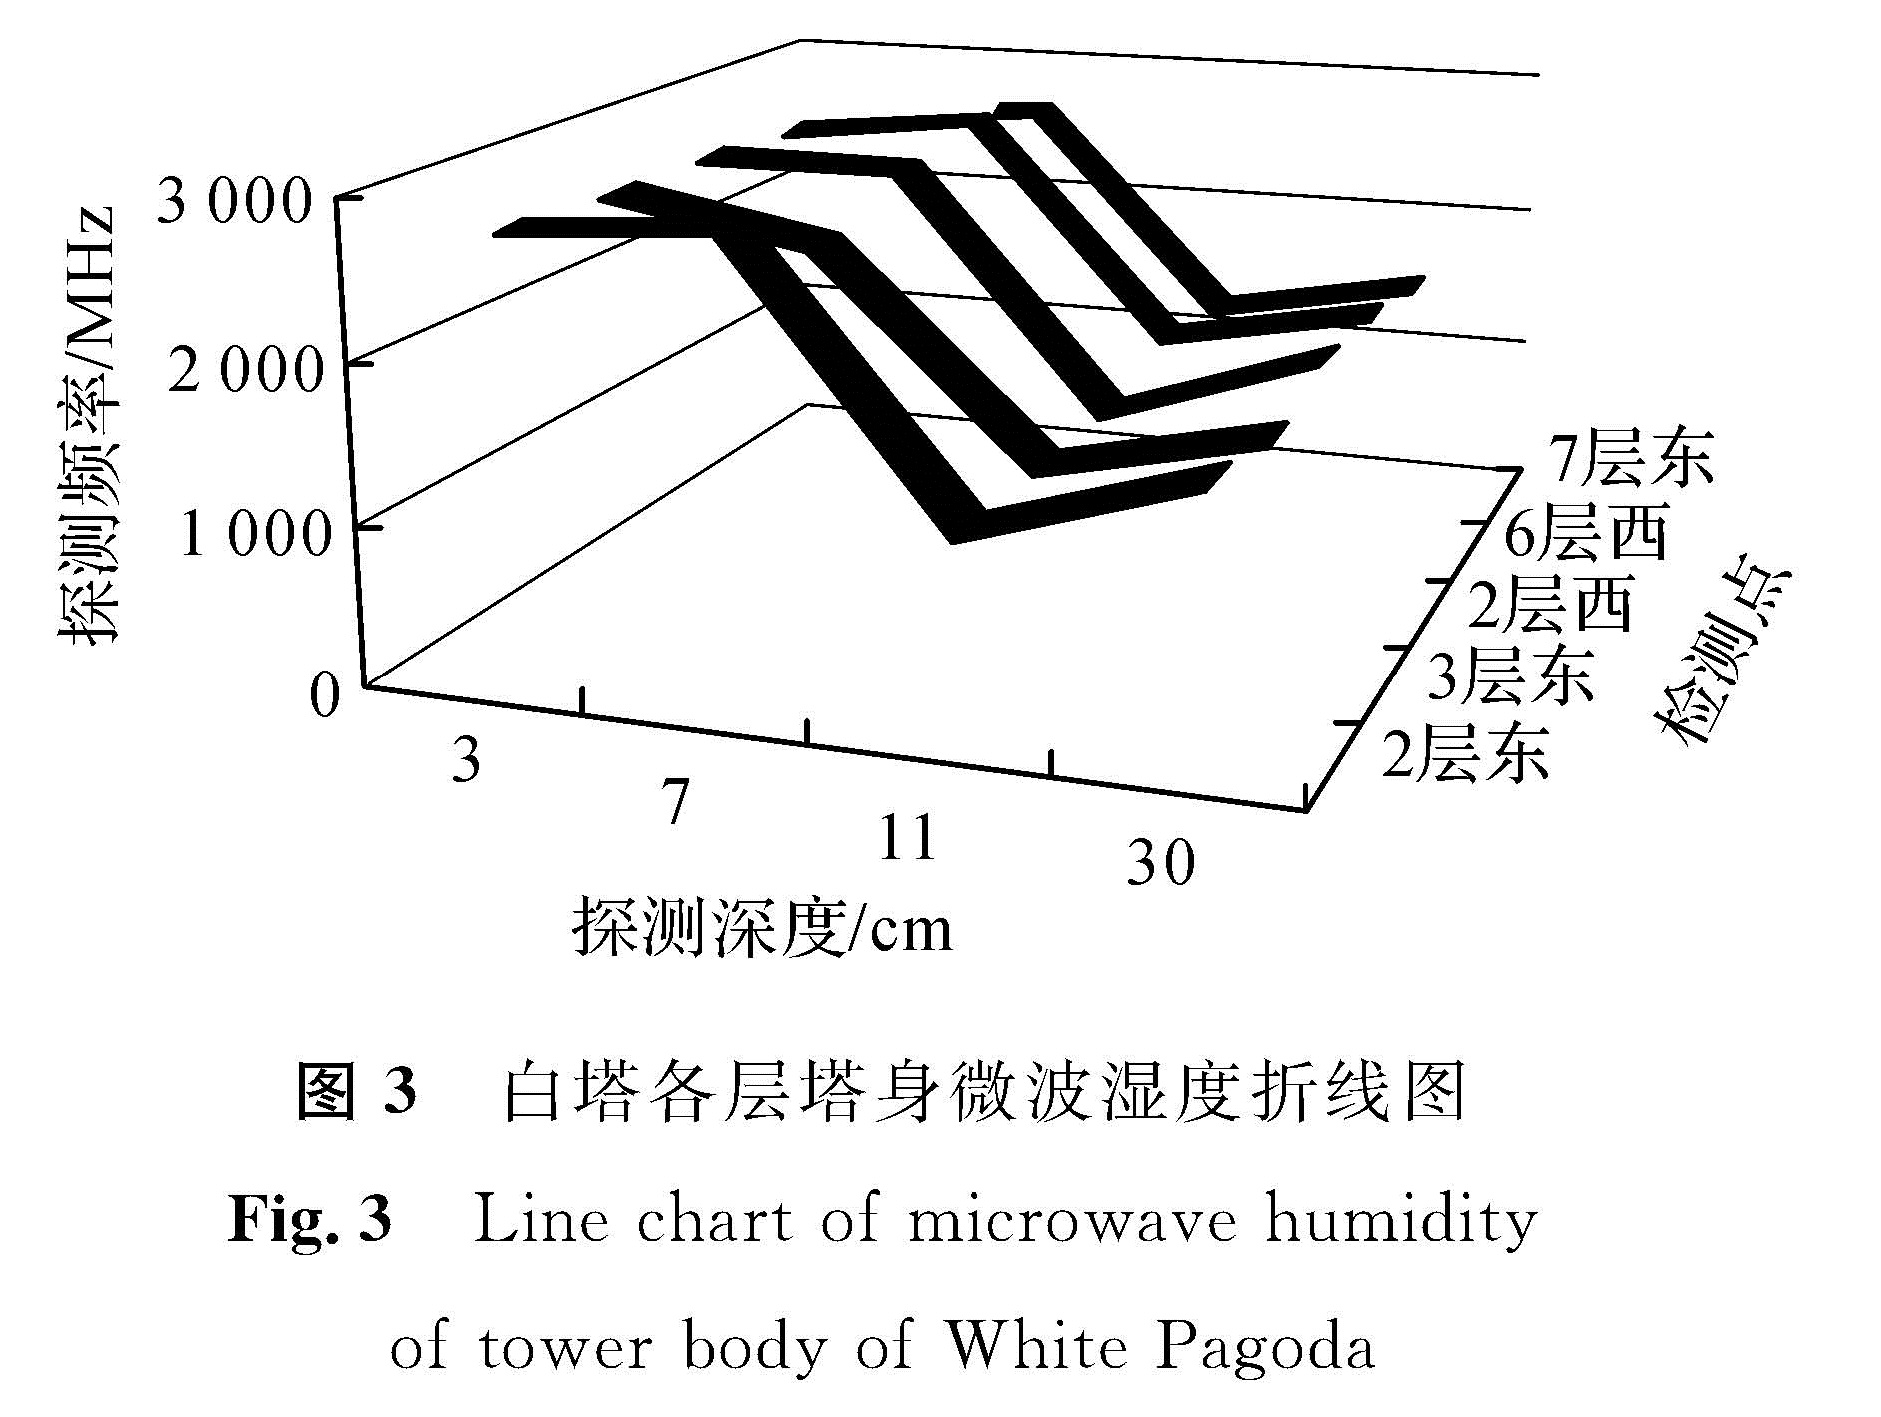 图3 白塔各层塔身微波湿度折线图<br/>Fig.3 Line chart of microwave humidity of tower body of White Pagoda